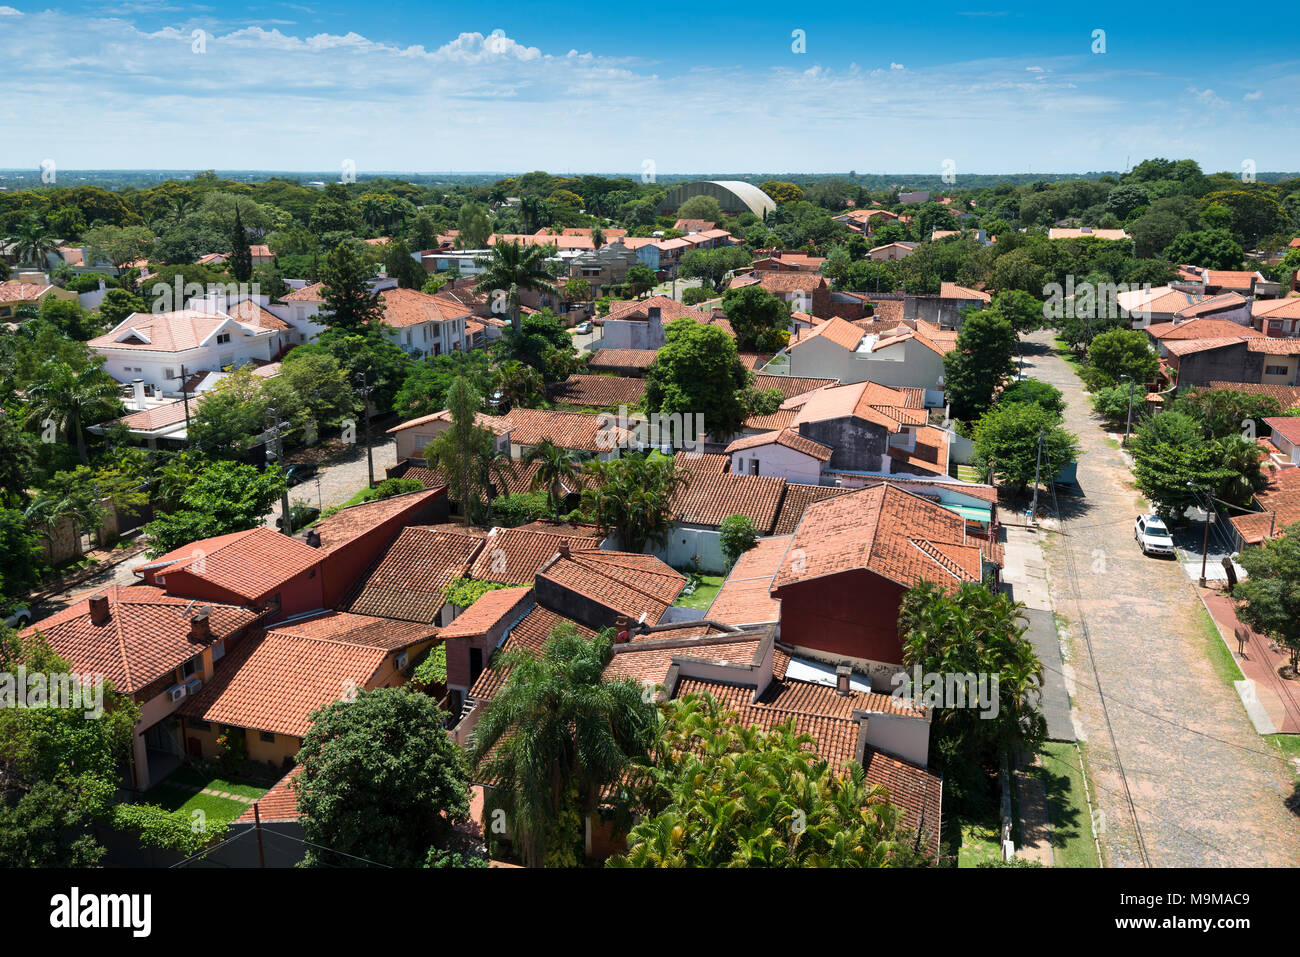 Portrait d'un quartier résidentiel à Asunción, la capitale du Paraguay, avec des maisons de style traditionnel espagnol. Banque D'Images